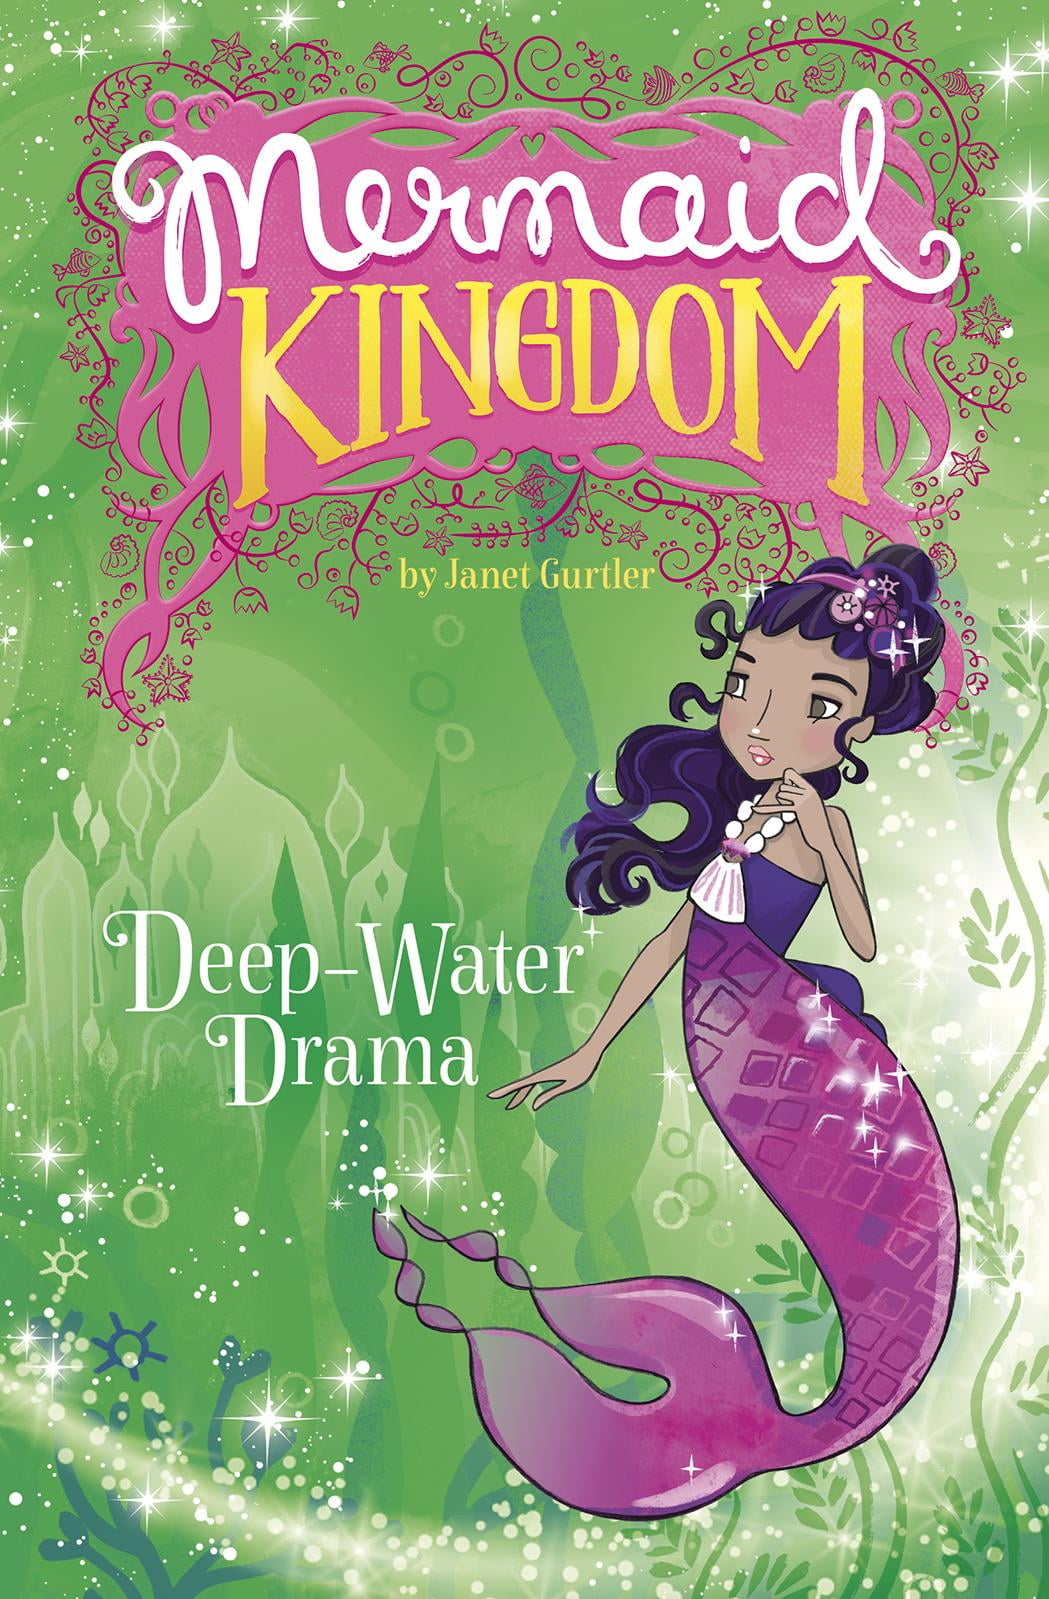 Mermaid Kingdom: Deep-Water Drama (Hardcover) - Walmart - Walmart